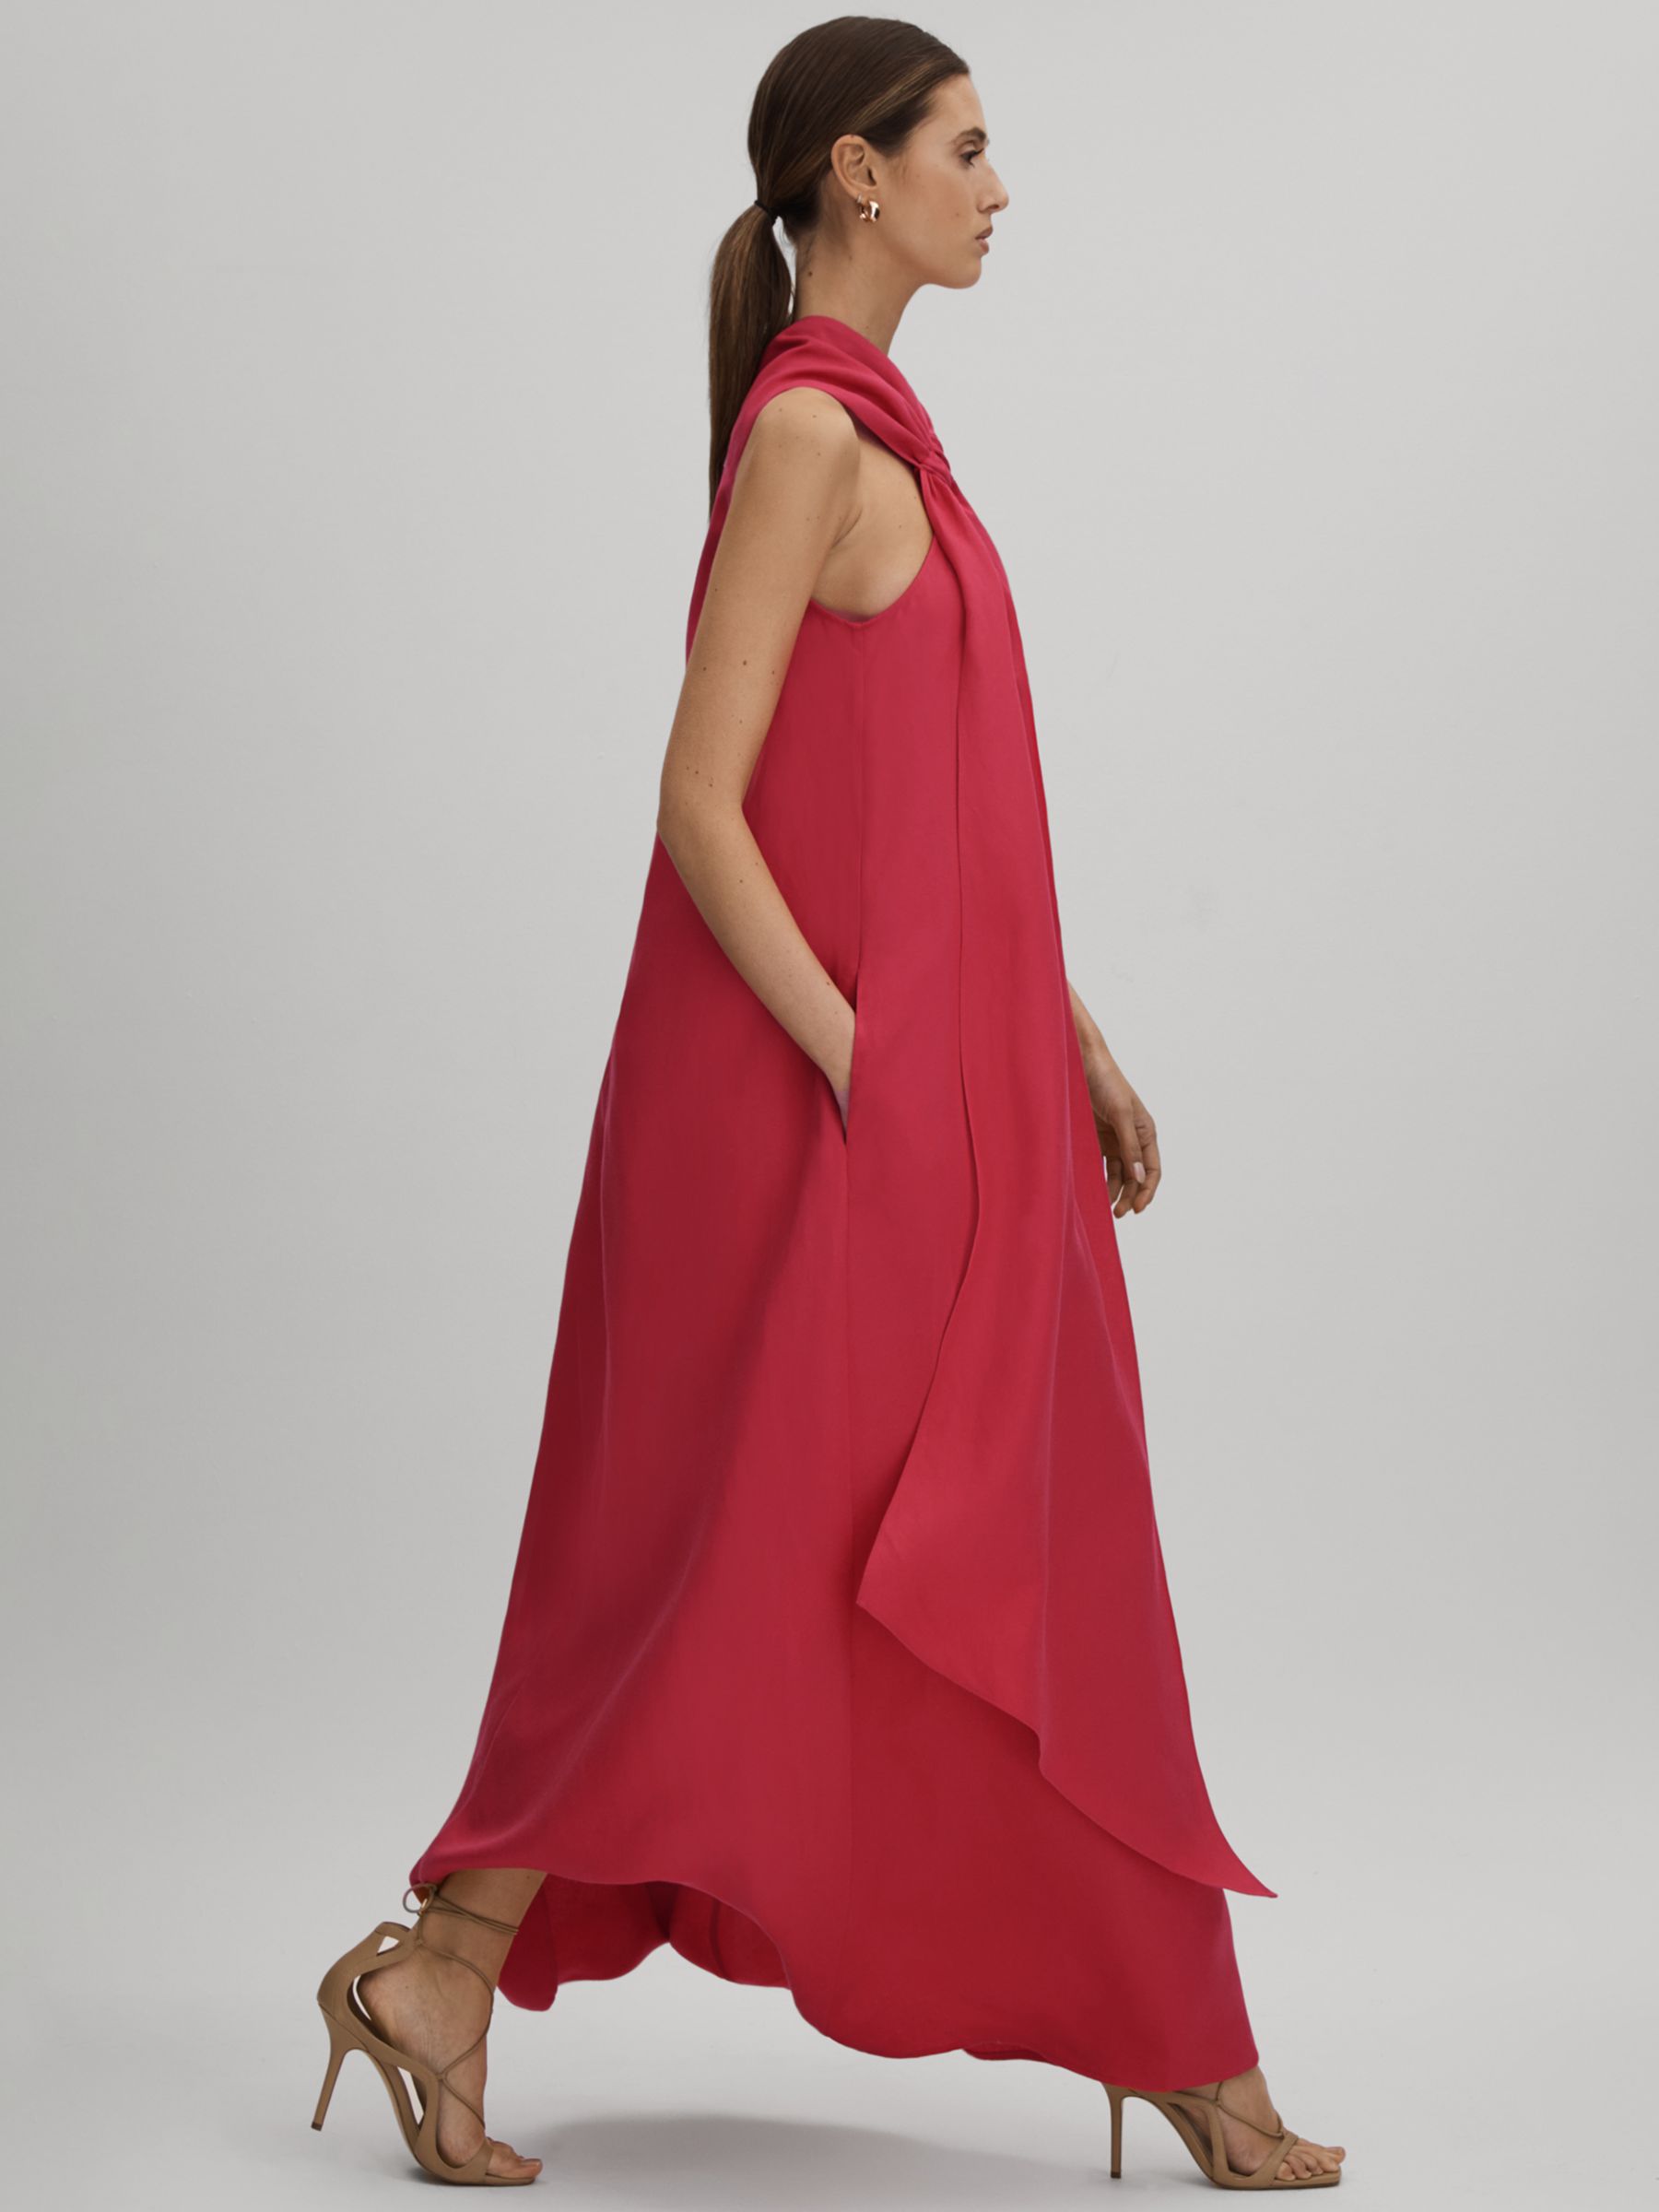 Reiss Odell Linen Blend Maxi Dress, Coral, 14